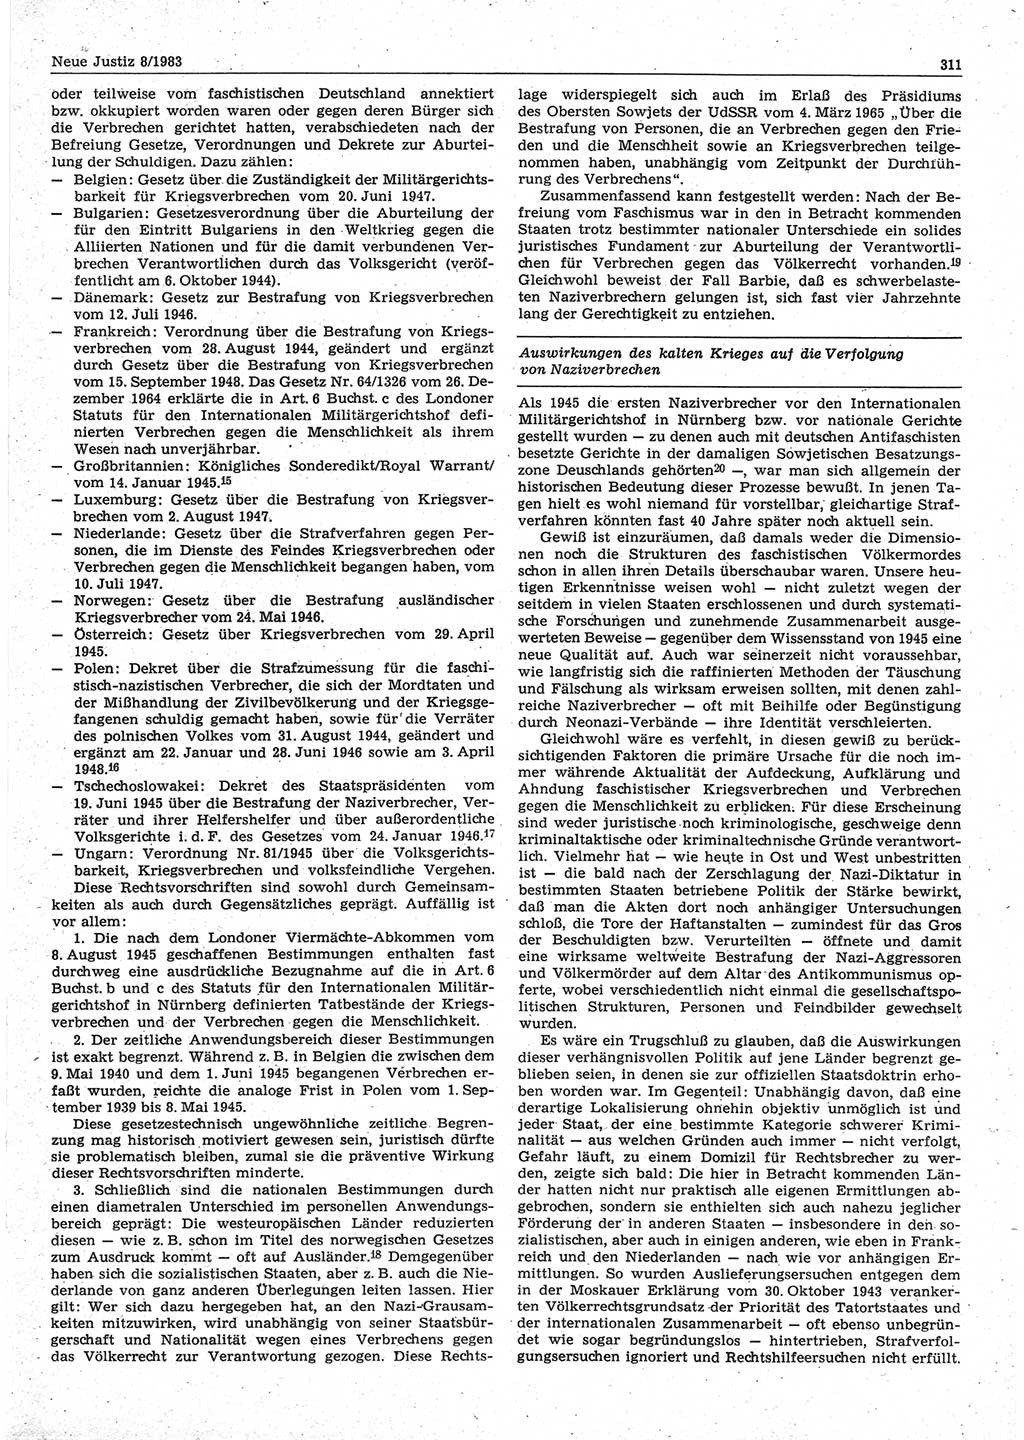 Neue Justiz (NJ), Zeitschrift für sozialistisches Recht und Gesetzlichkeit [Deutsche Demokratische Republik (DDR)], 37. Jahrgang 1983, Seite 311 (NJ DDR 1983, S. 311)